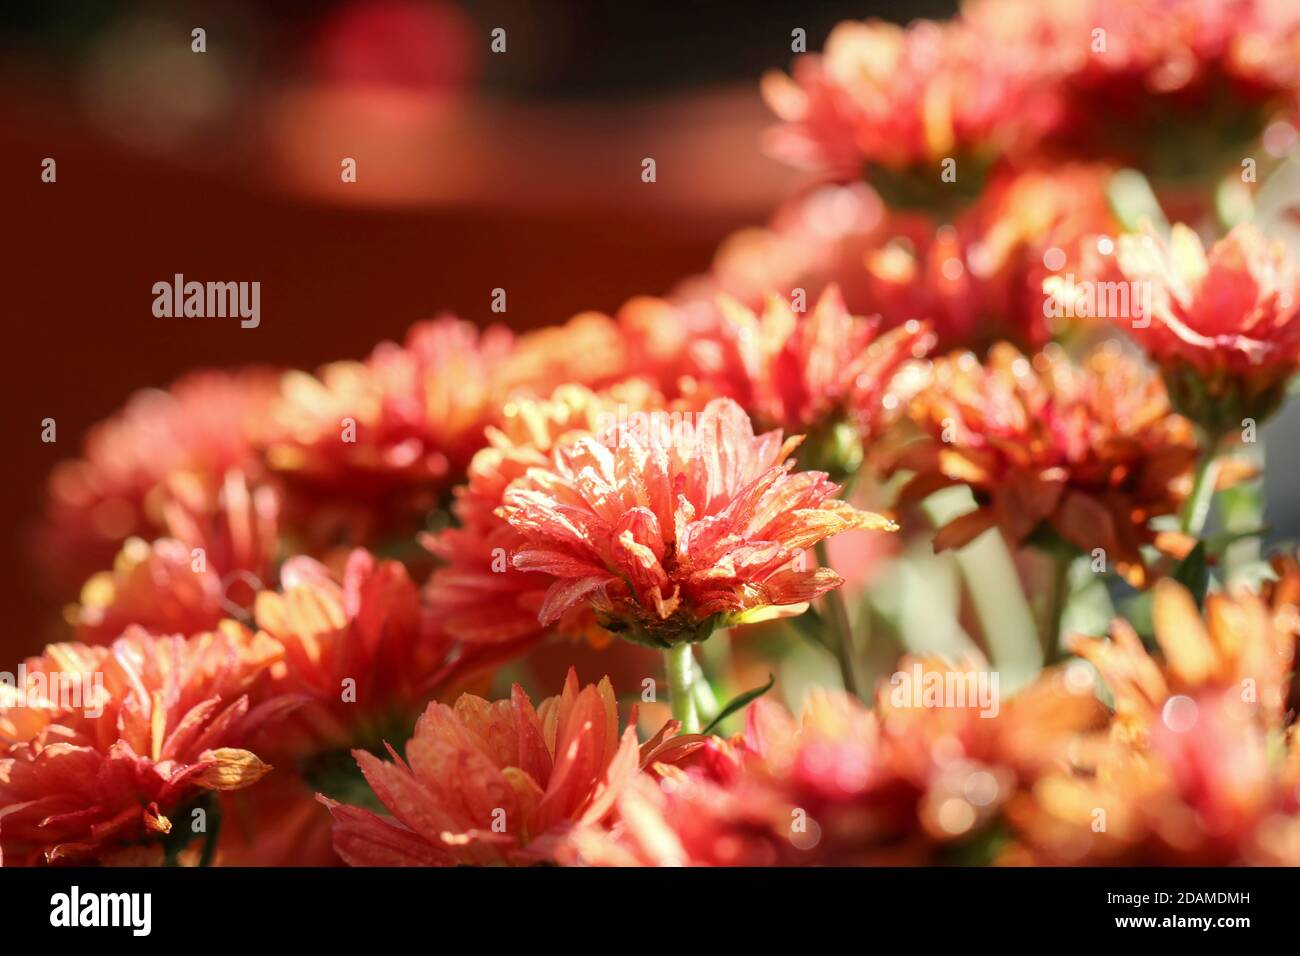 Autumn flowers in the sun Stock Photo